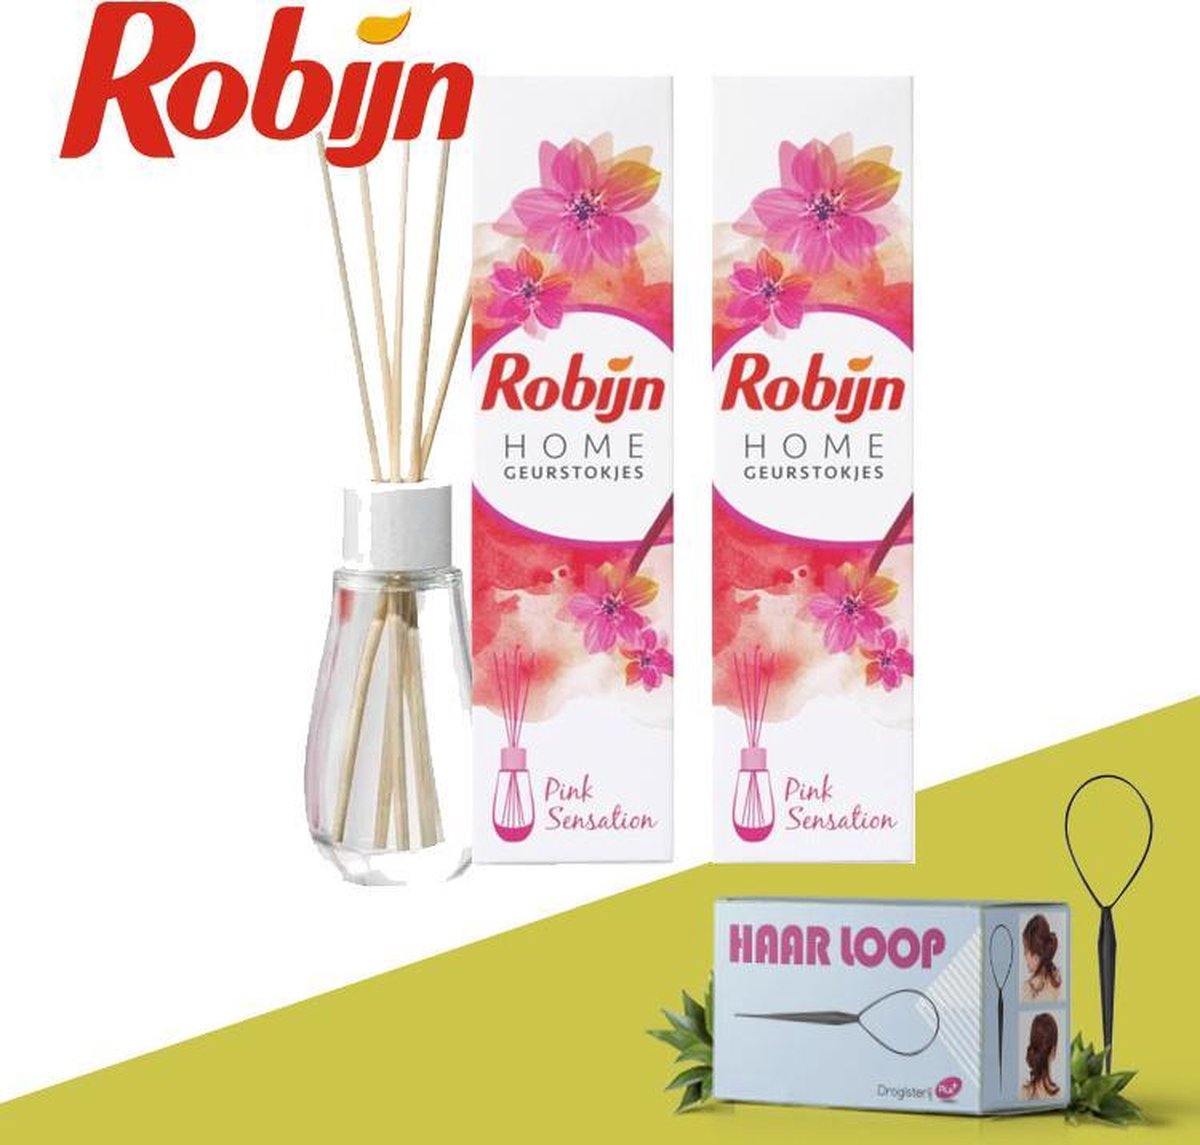 Robijn Home Geurstokjes Pink Sensation - 2 Pack Inclusief Haarloop